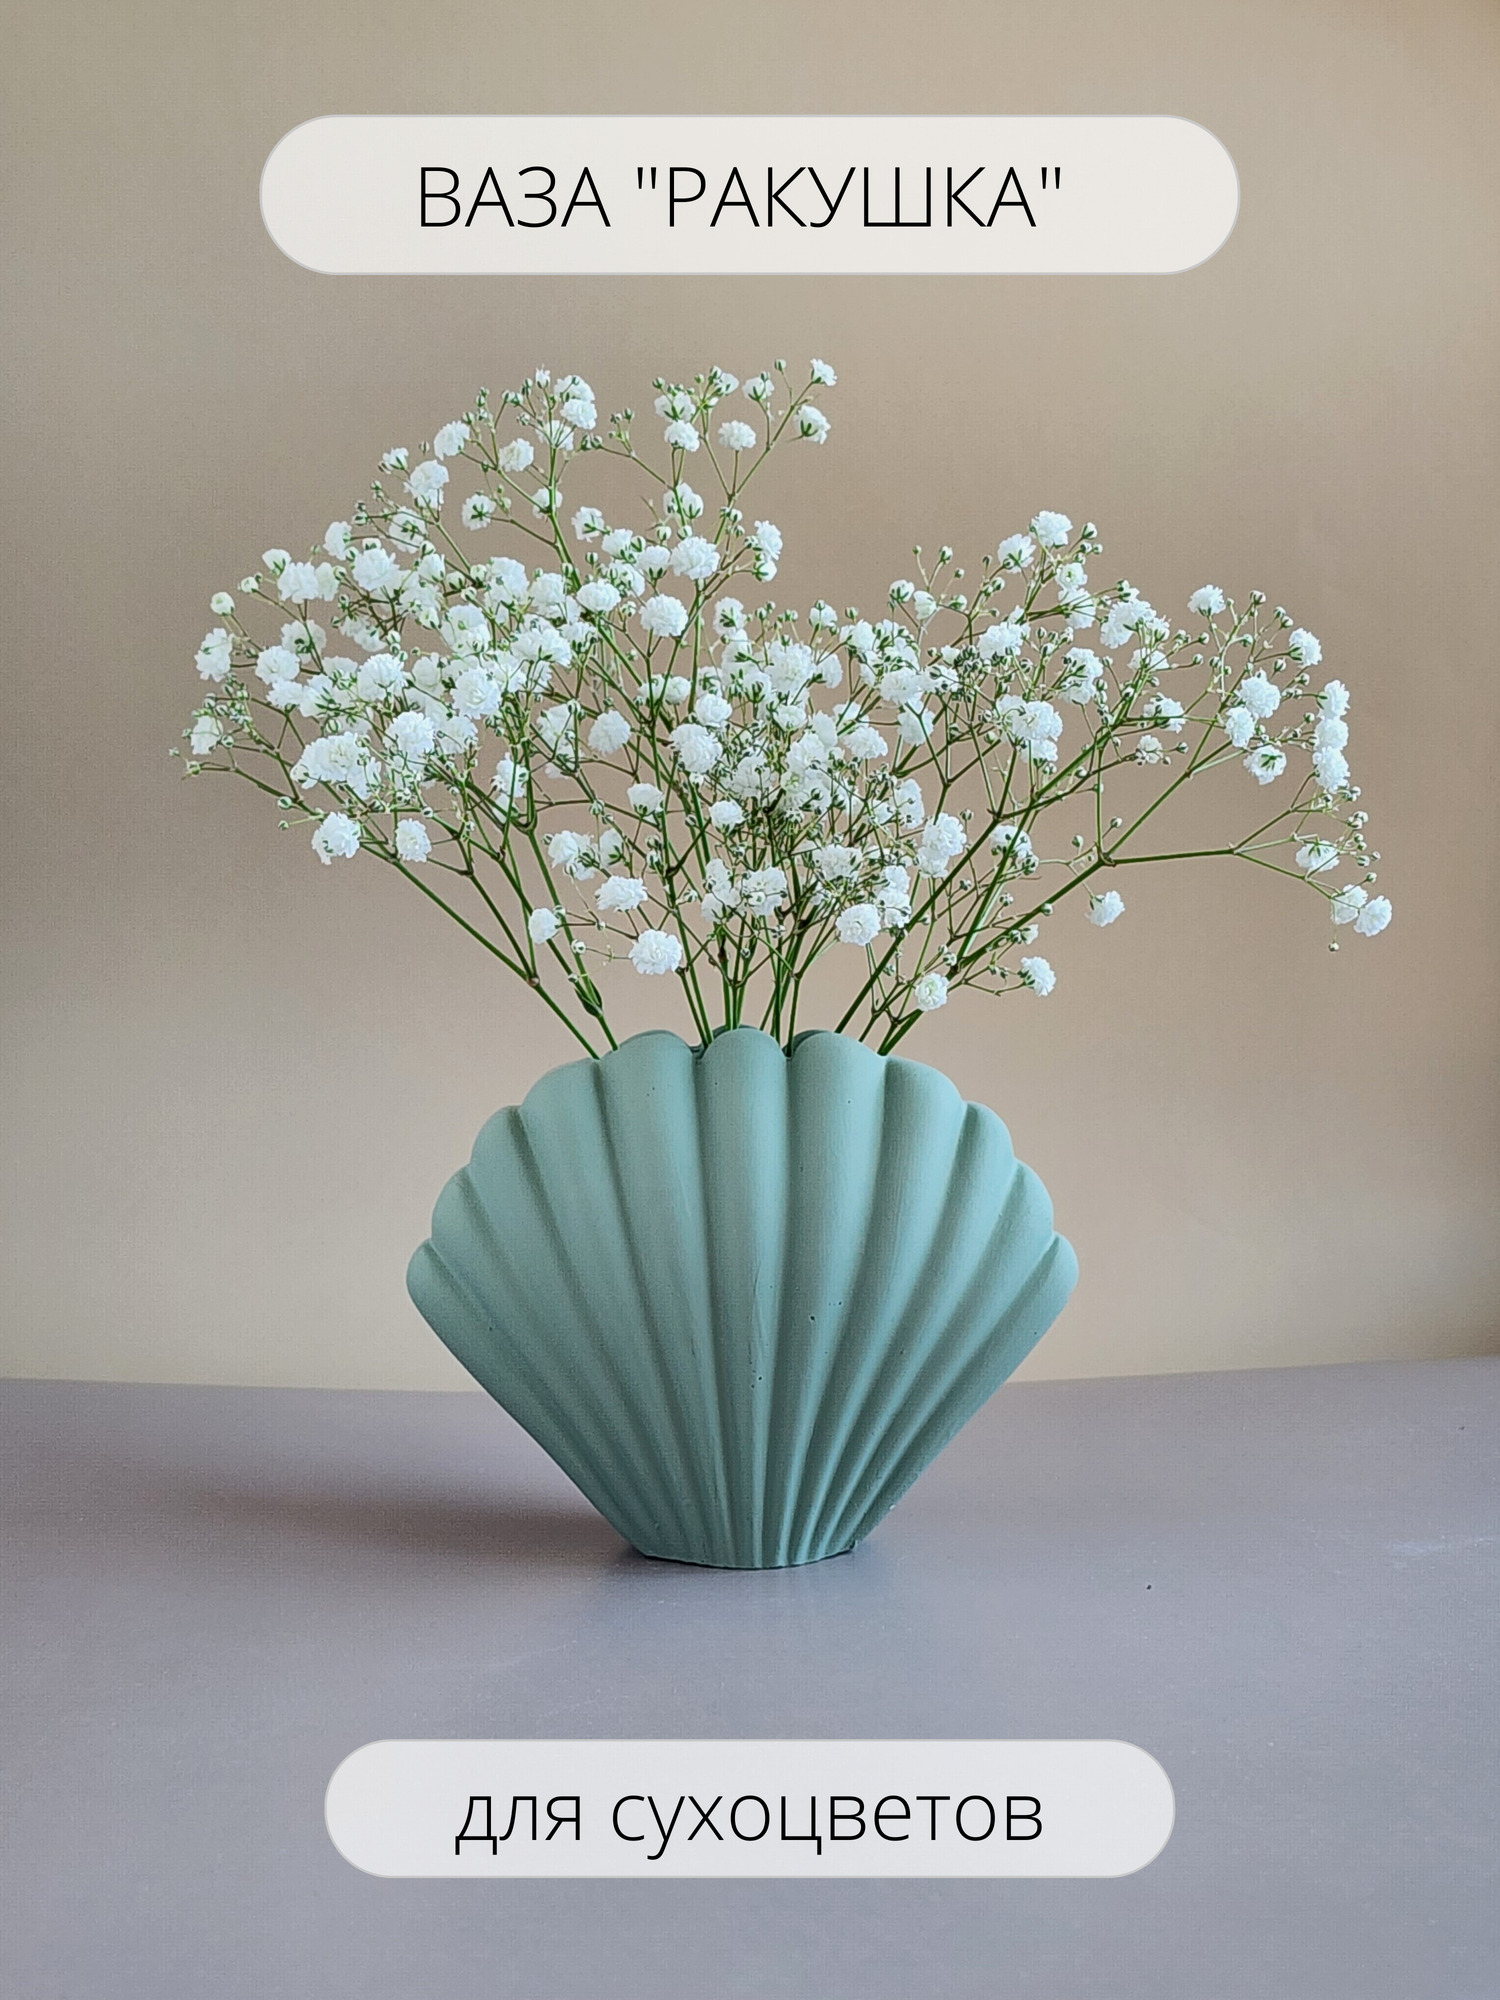 Декоративная ваза "Ракушка" для сухоцветов